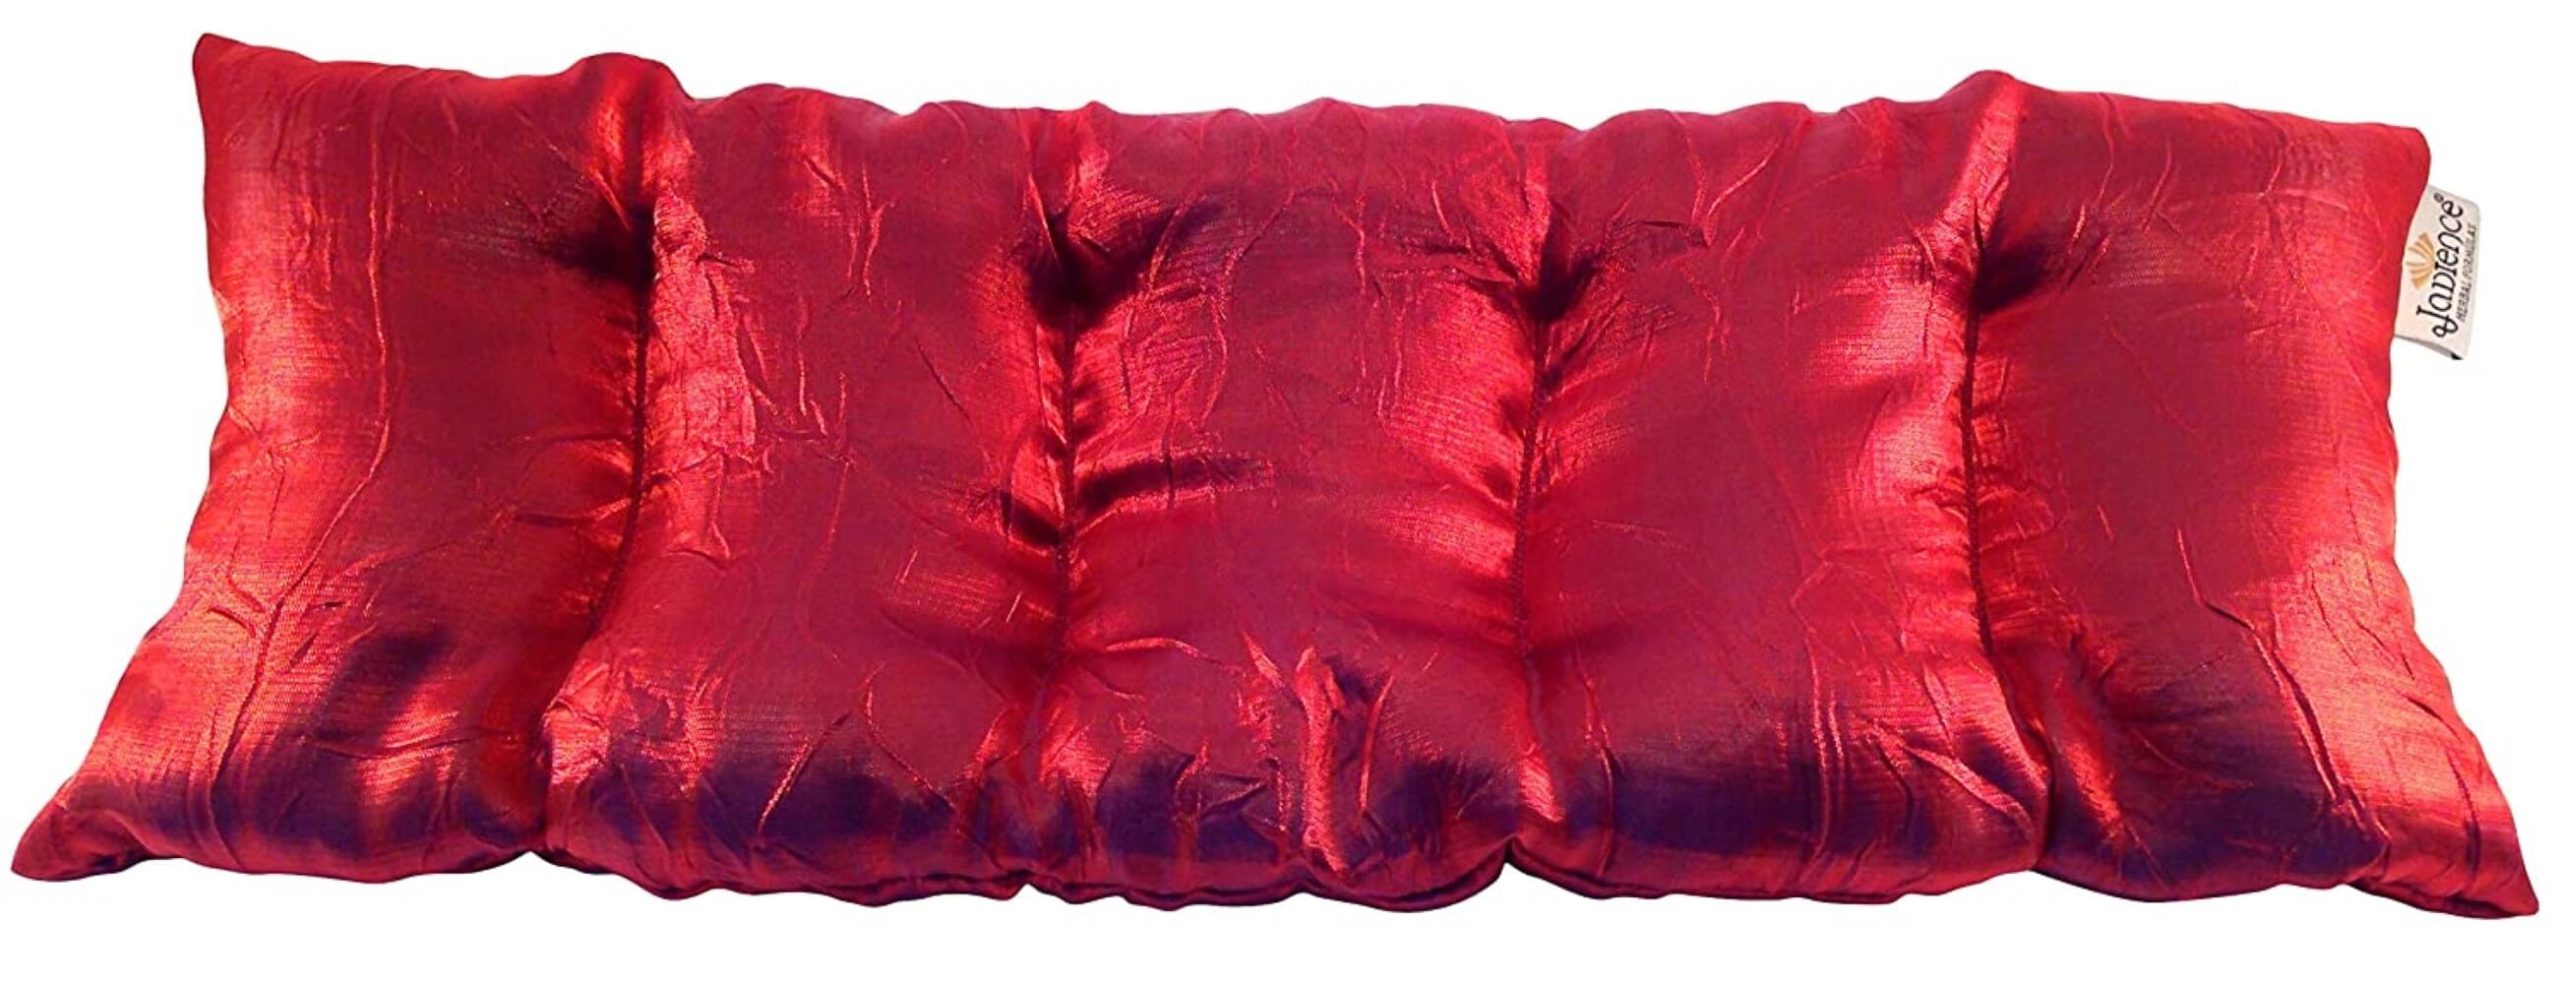 Jade Healing Body Pillows – NEW Red